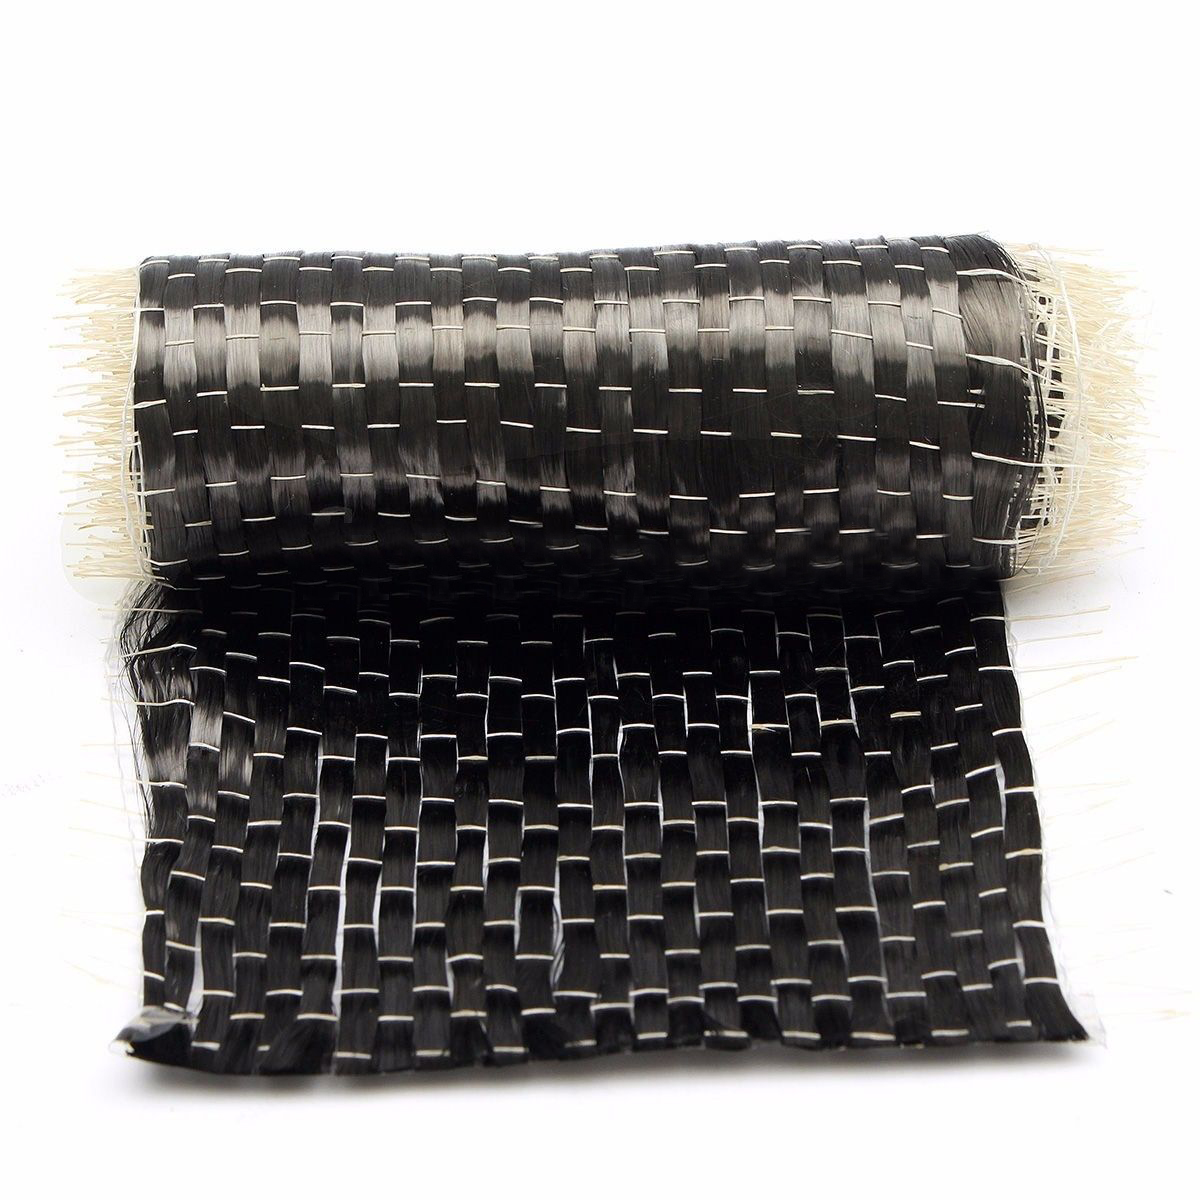 10*100cm Black Carbon Fiber Fabric Tape Uni-directional Weave 12K 200G Carbon Fiber Cloth for Fire Protection Architecture